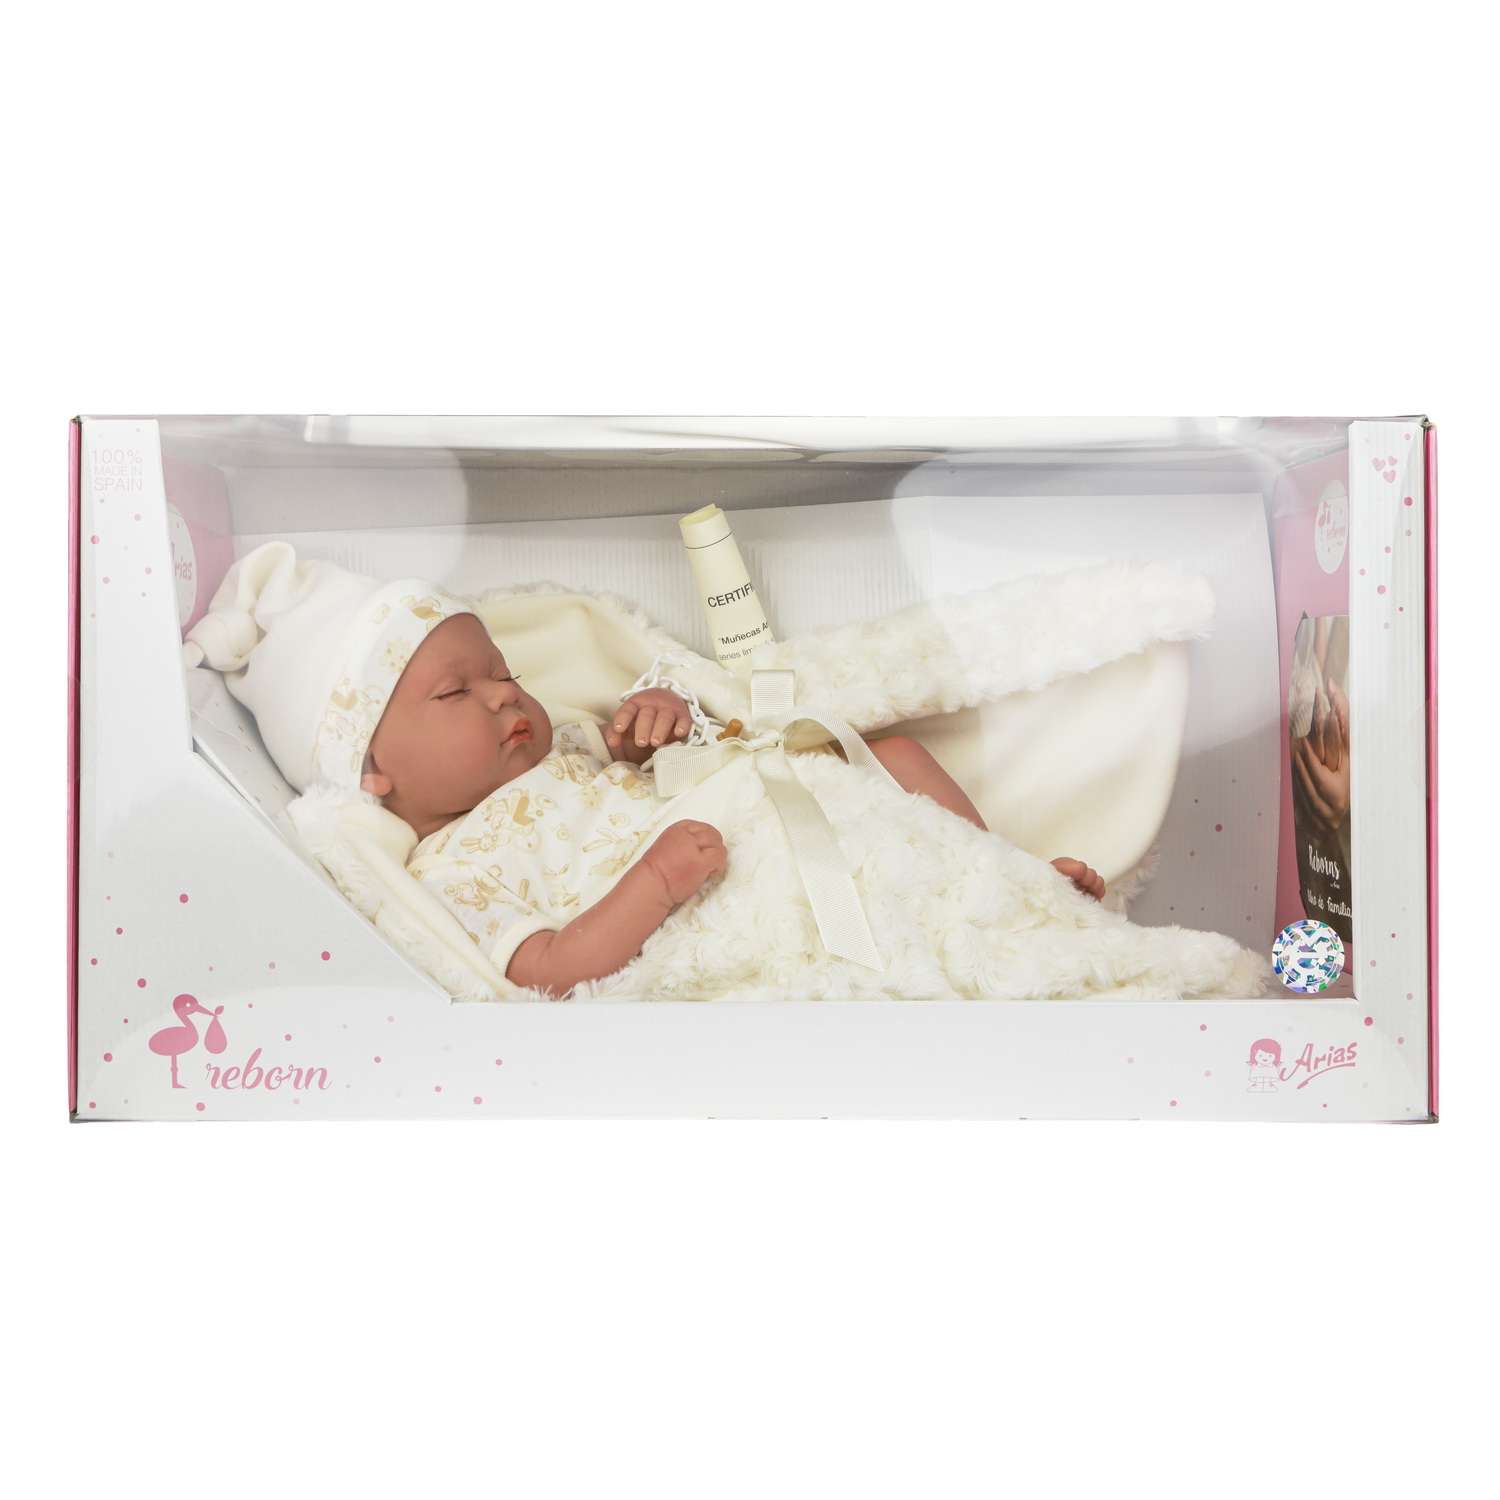 Кукла Arias ReBorns Pablo новорождённый пупс 45 см в одежде с соской одеялом подгузниками Т22108 - фото 7